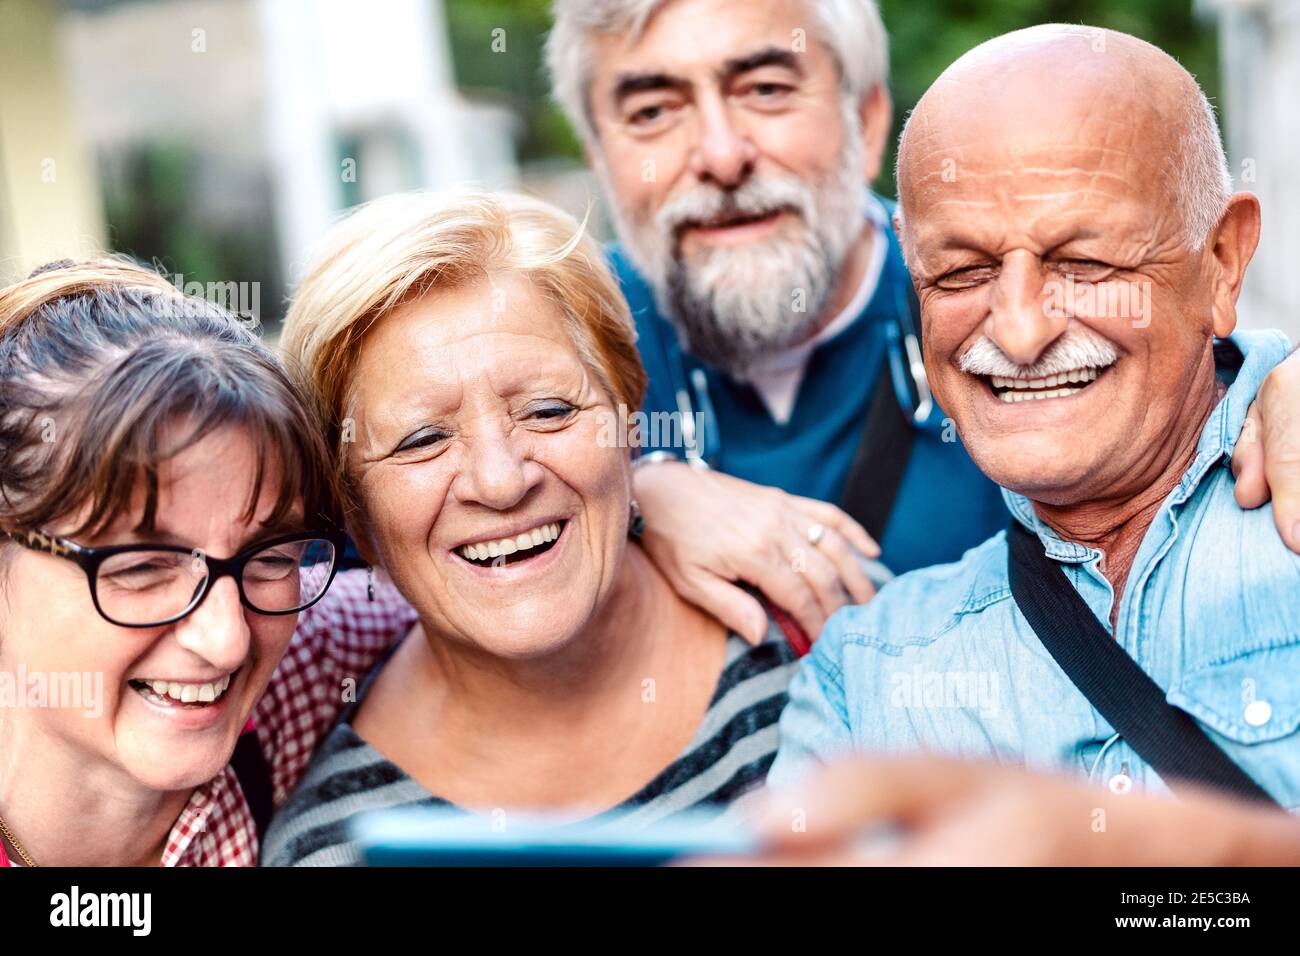 Des amis aînés heureux emportant un selfie dans la vieille ville - Les retraités s'amusent avec leur téléphone mobile - positif concept de mode de vie des personnes âgées Banque D'Images